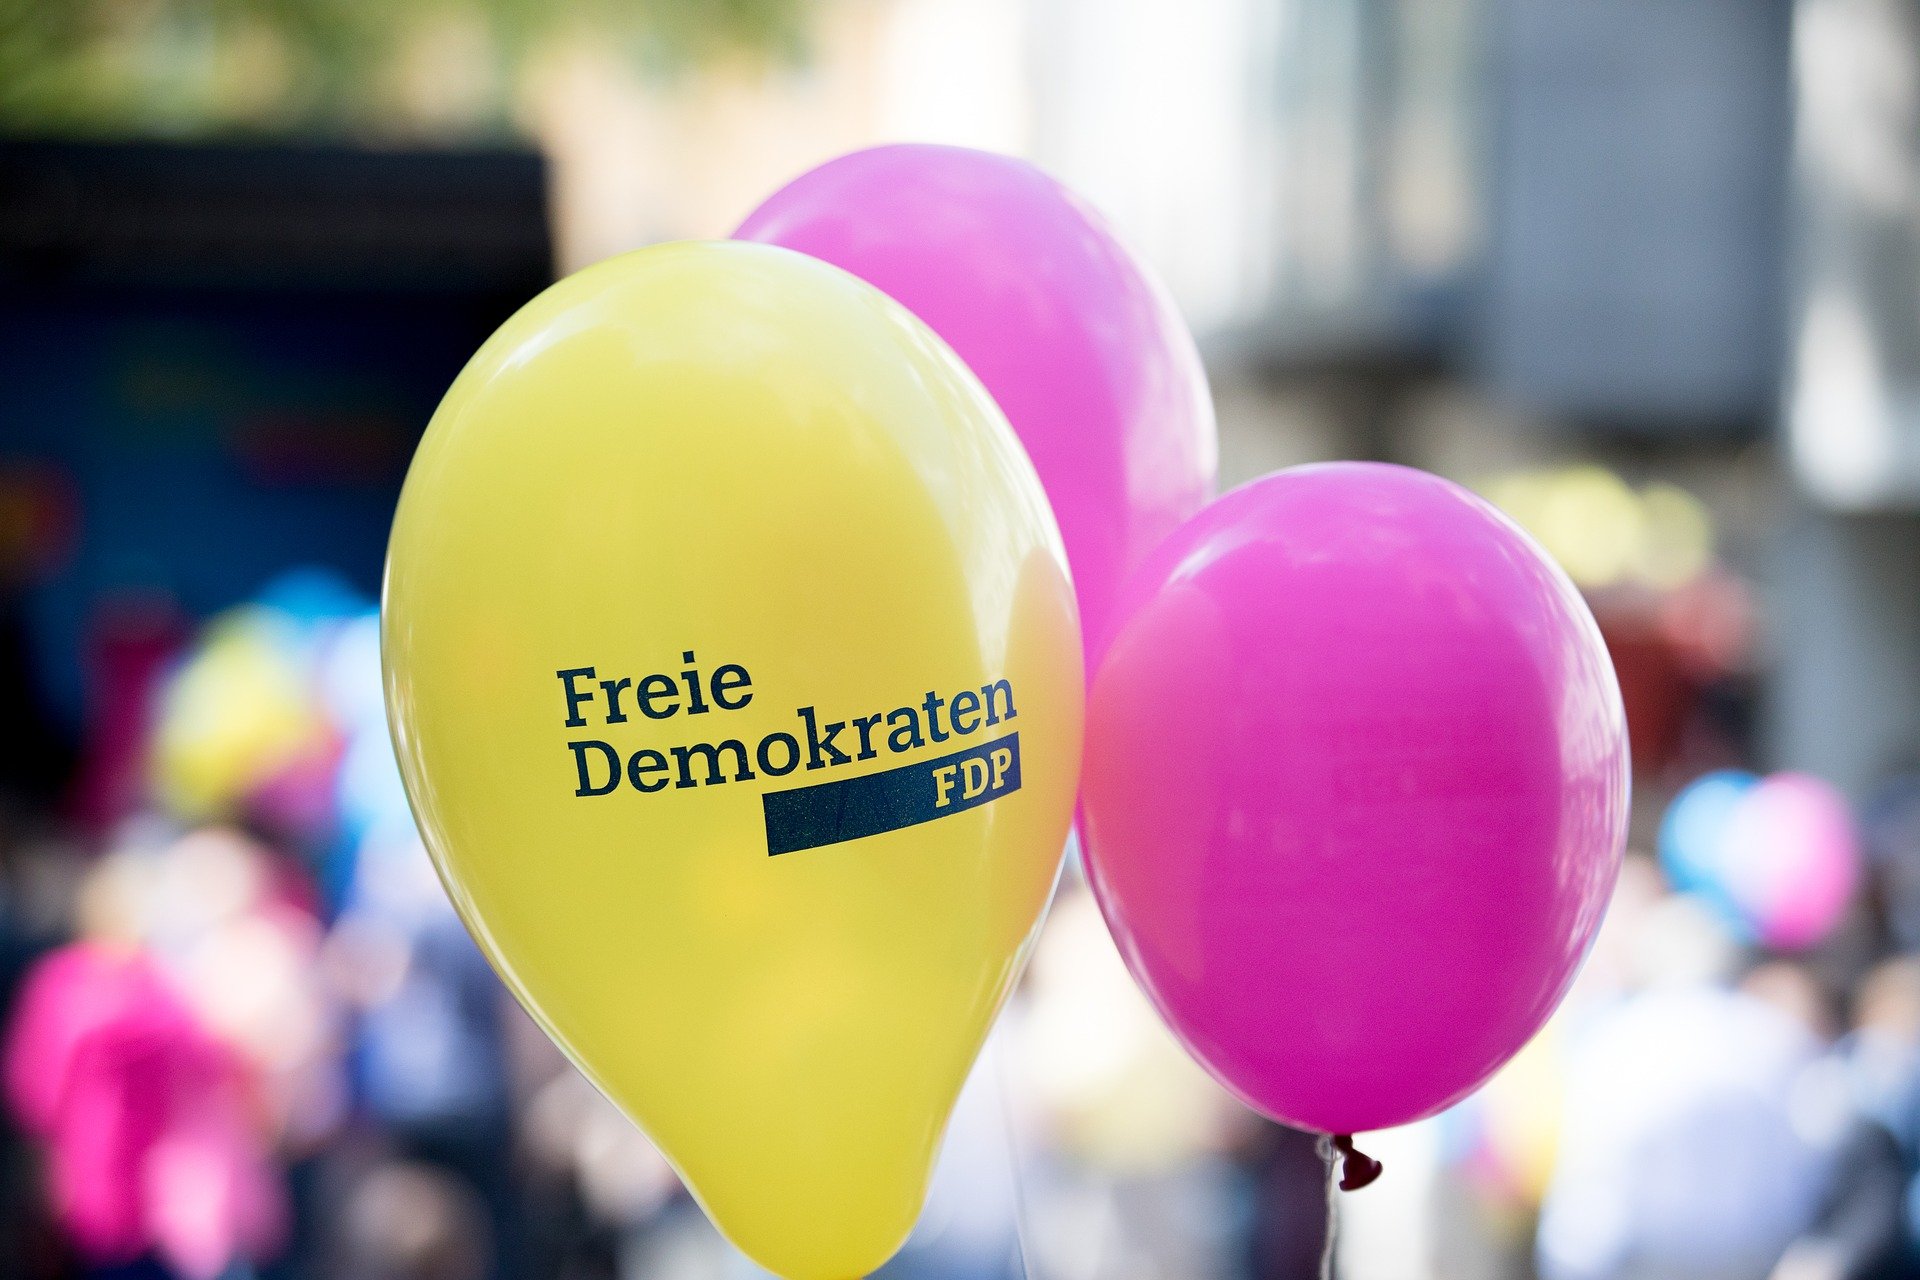 FDP Emmerich erinnert an seine Gründung vor 75 Jahren